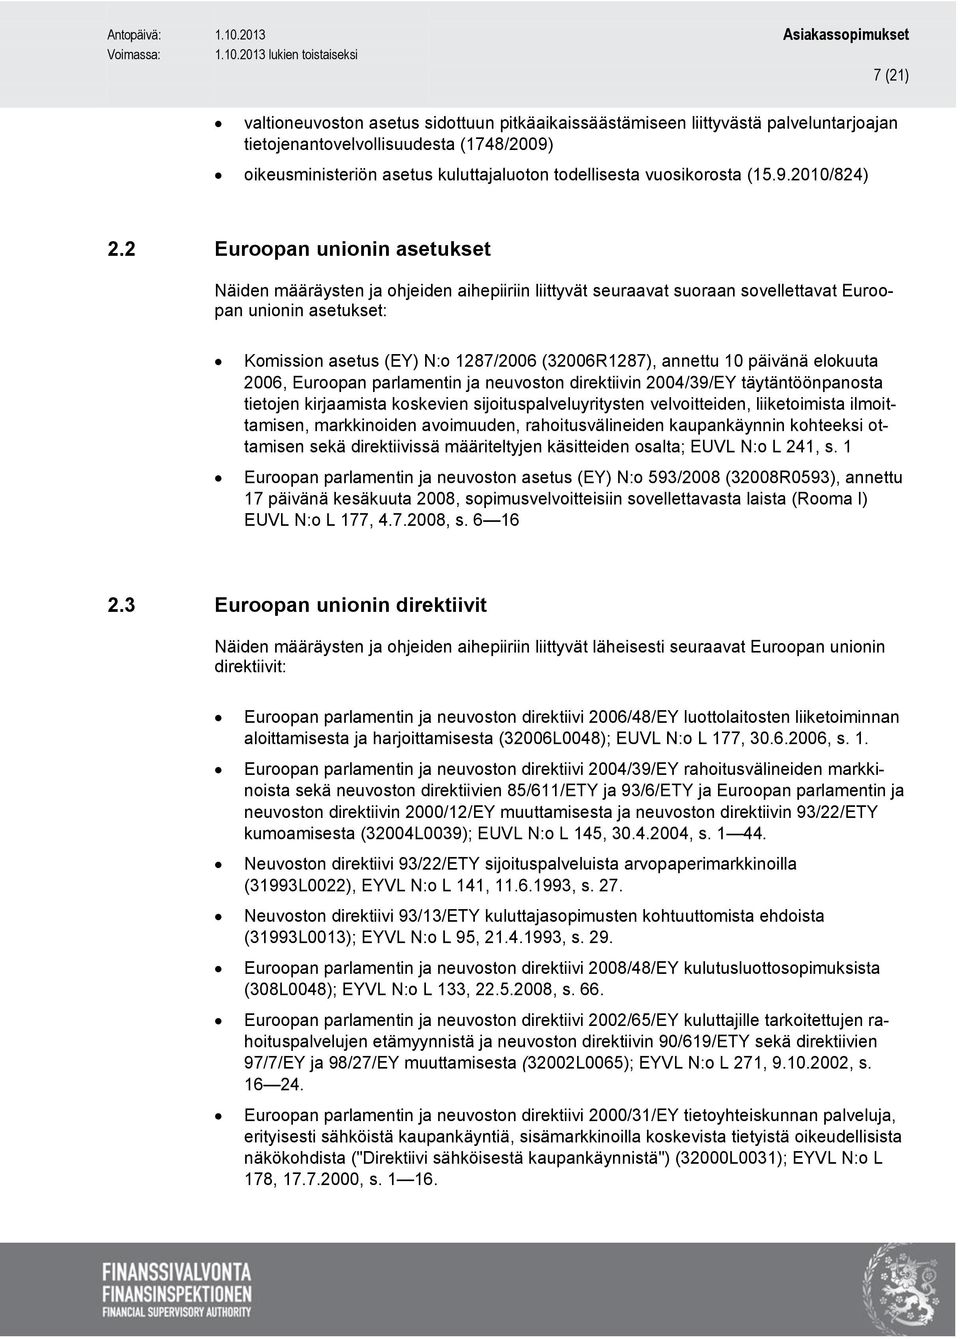 2 Euroopan unionin asetukset Näiden määräysten ja ohjeiden aihepiiriin liittyvät seuraavat suoraan sovellettavat Euroopan unionin asetukset: Komission asetus (EY) N:o 1287/2006 (32006R1287), annettu